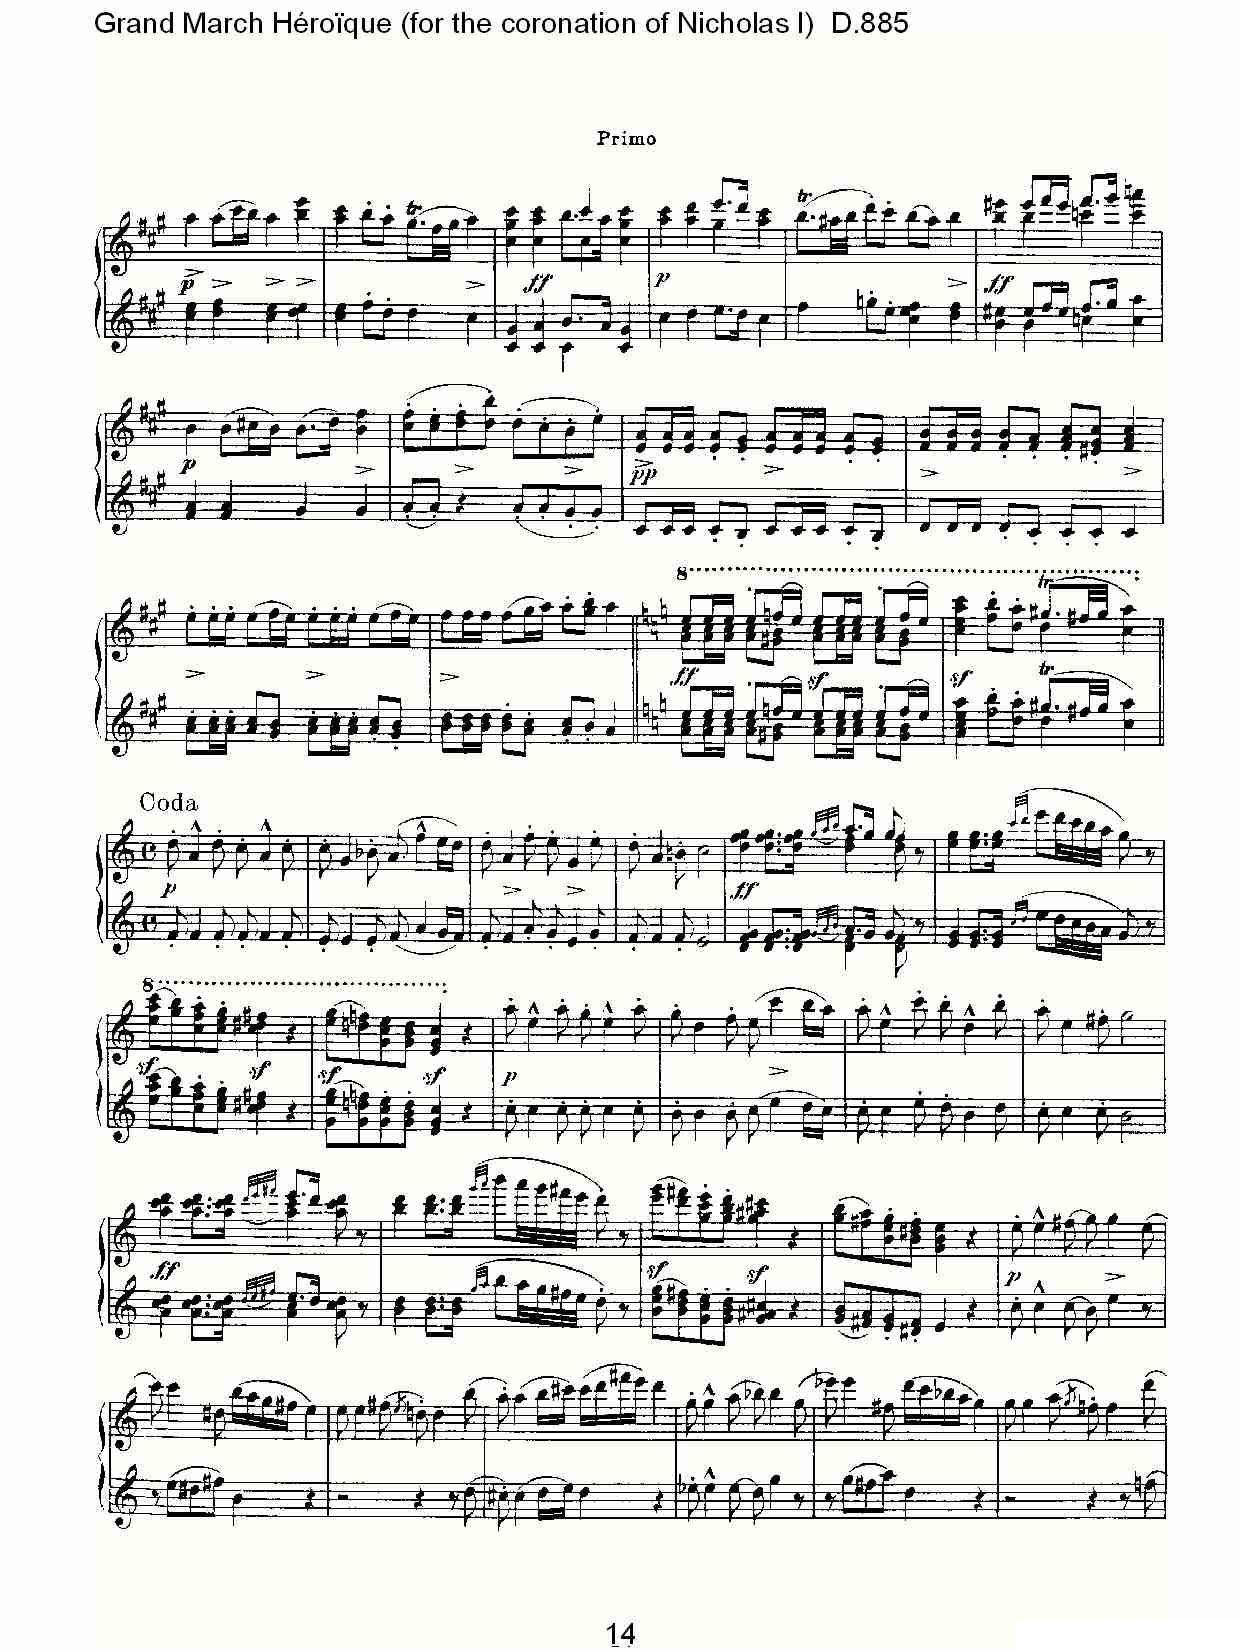 豪华进行曲（为尼古拉斯一世加冕礼而作)D.88）钢琴曲谱（图15）